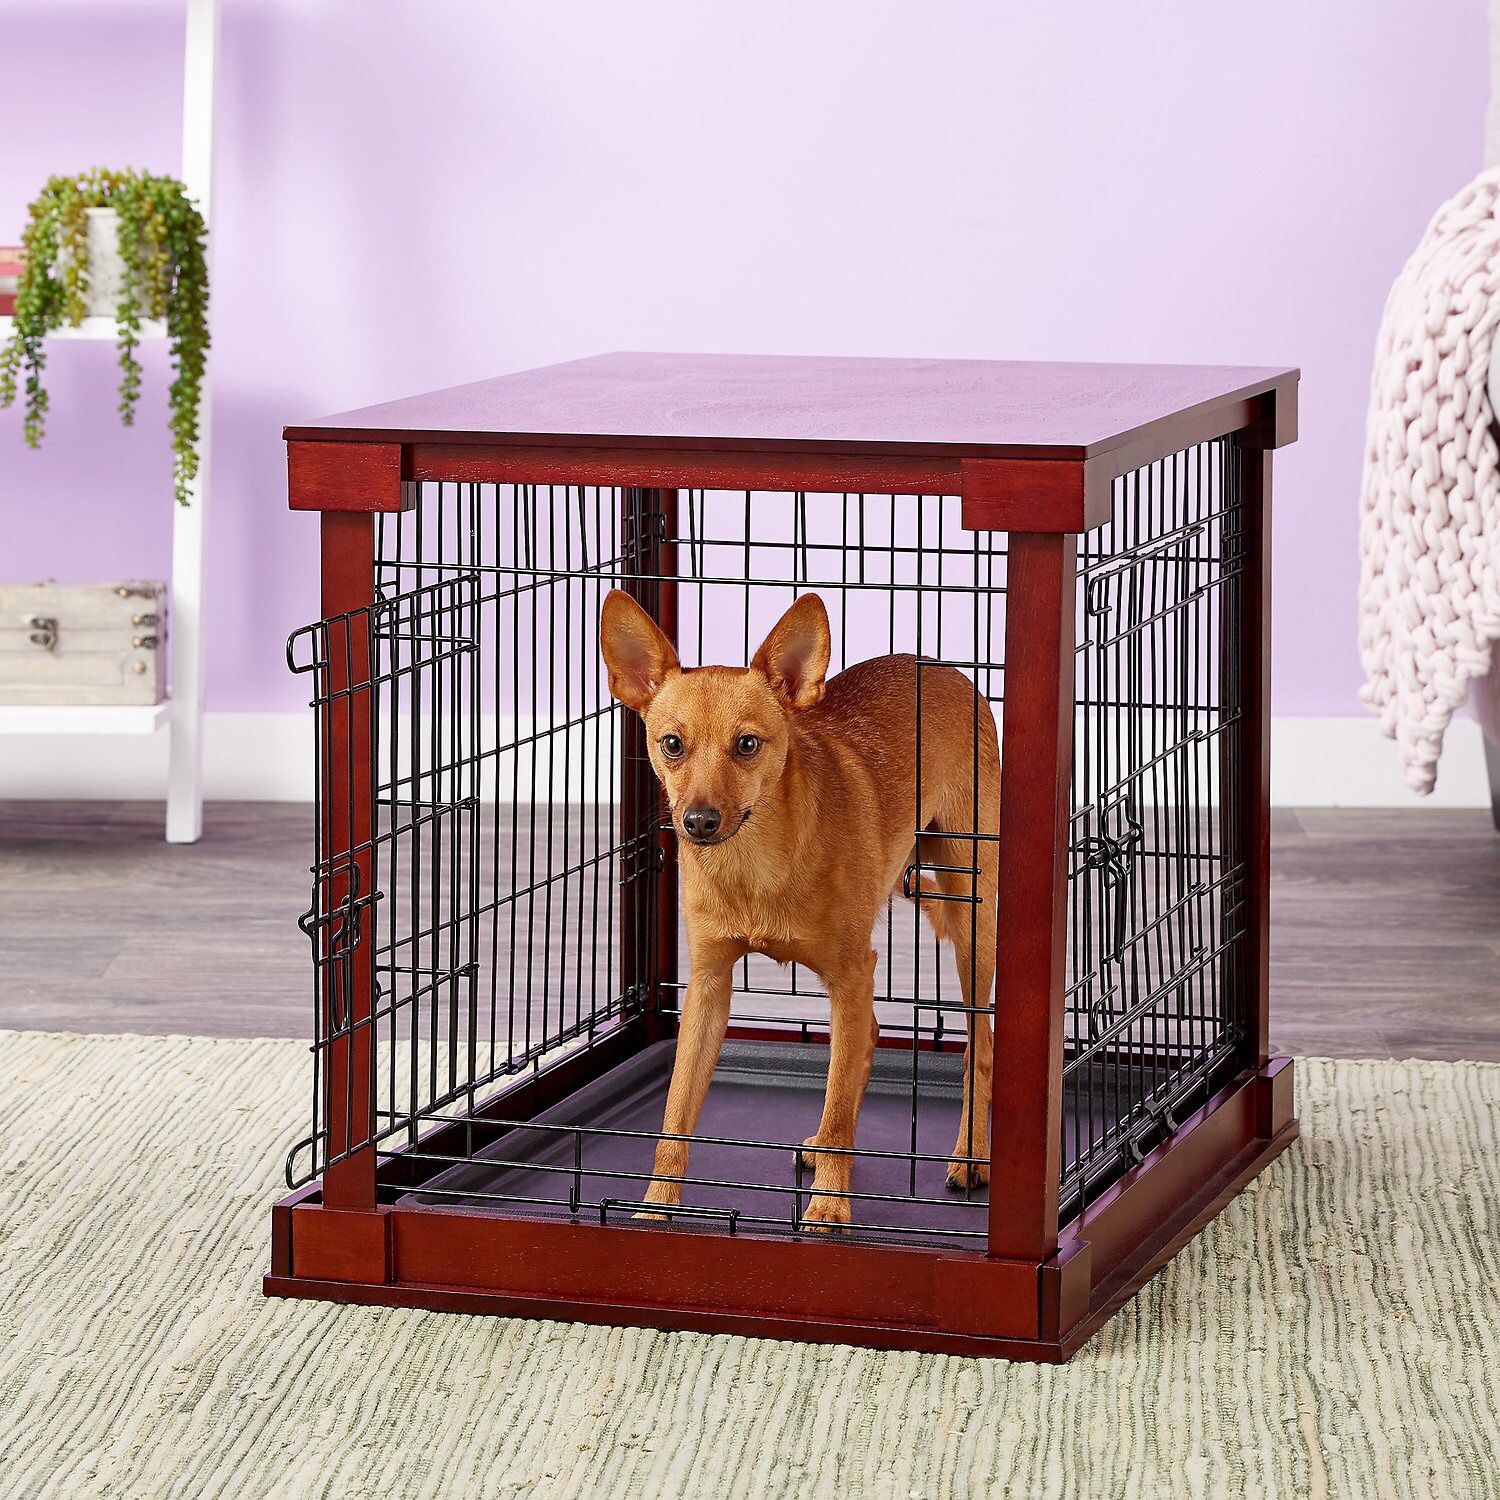 XL dog kennel